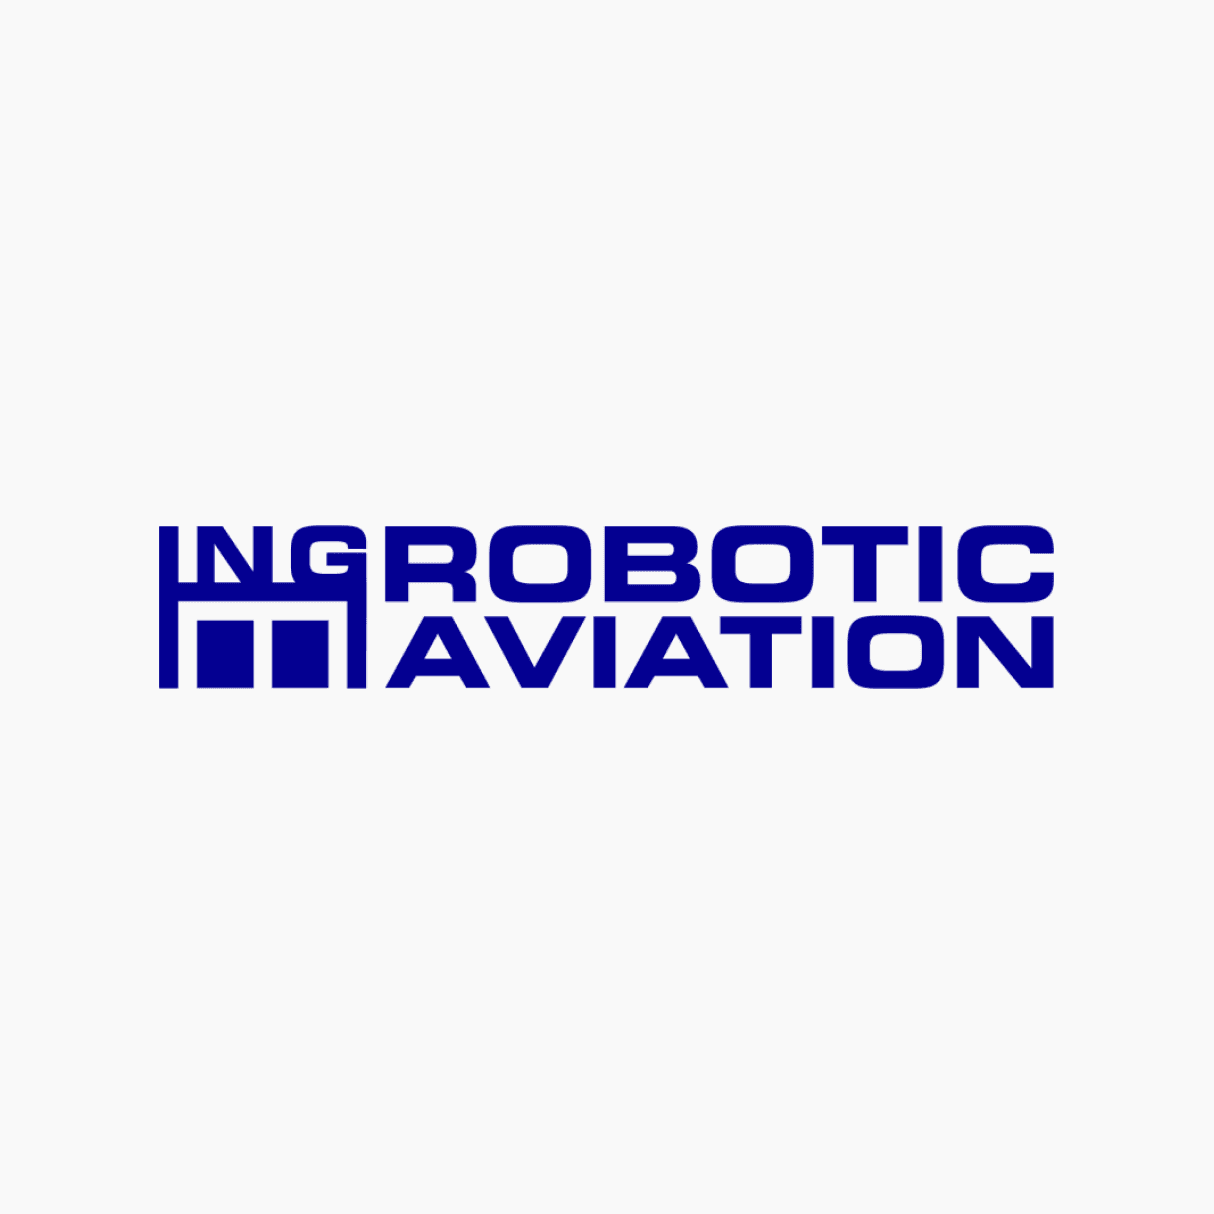 ING Robotic